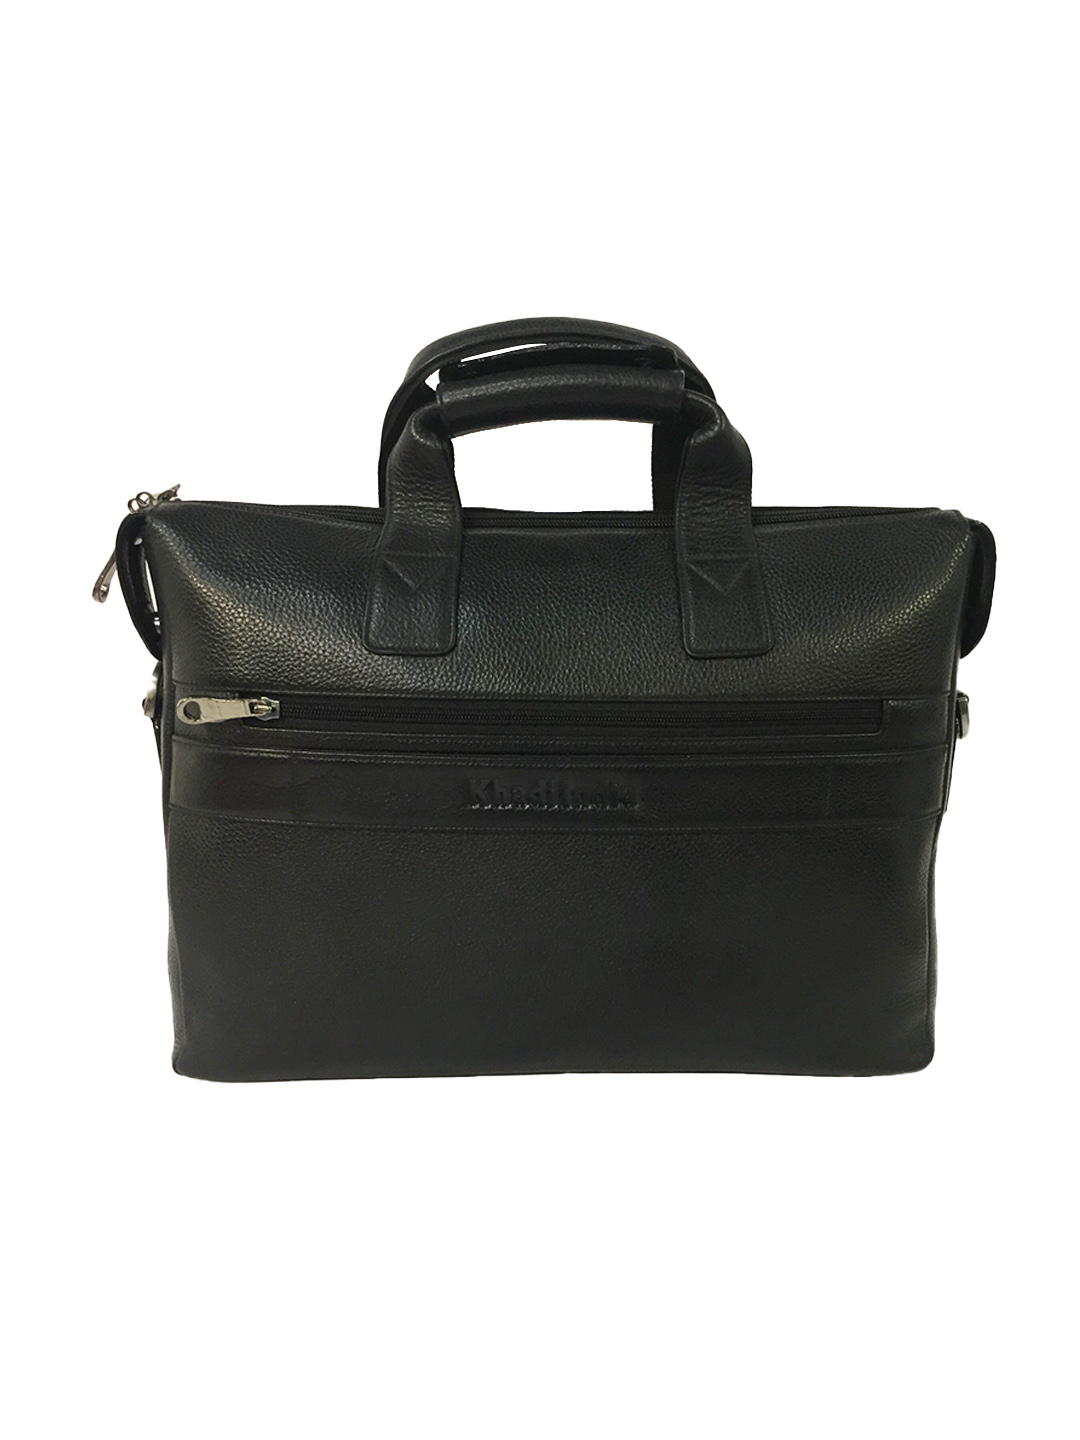 Genuine Leather Laptop Bag for Men-Office Bag for Men, Black colour- Laptop Messenger Bag -Rs7600